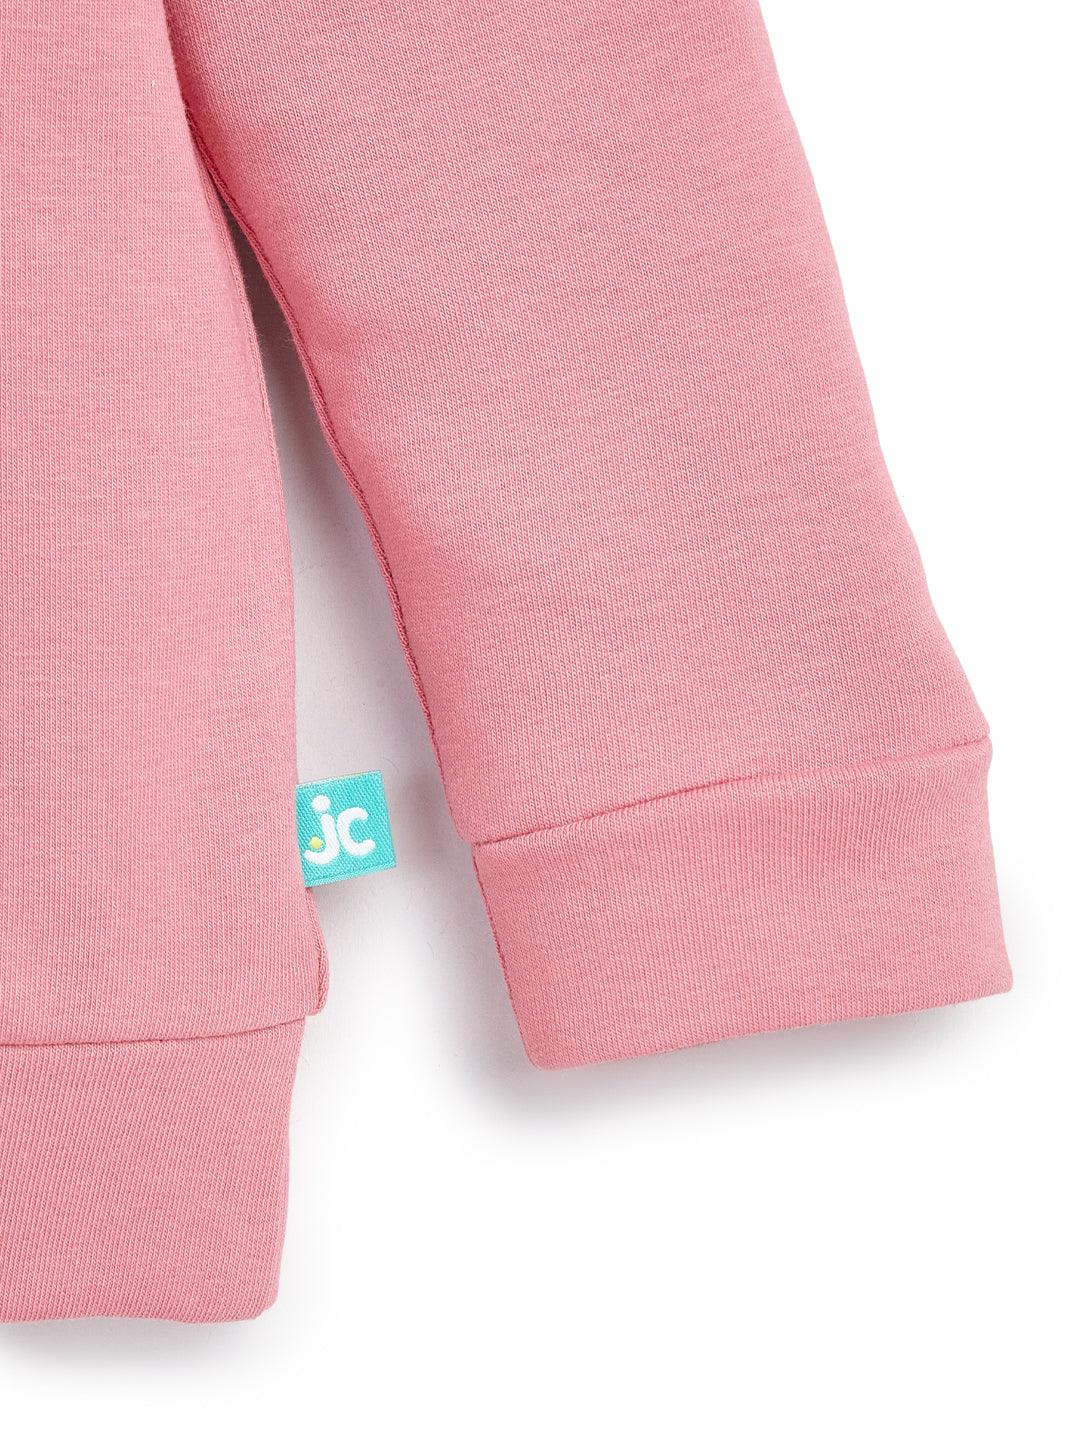 Baby Girls Top & Pyjama Clothing Set - Juscubs